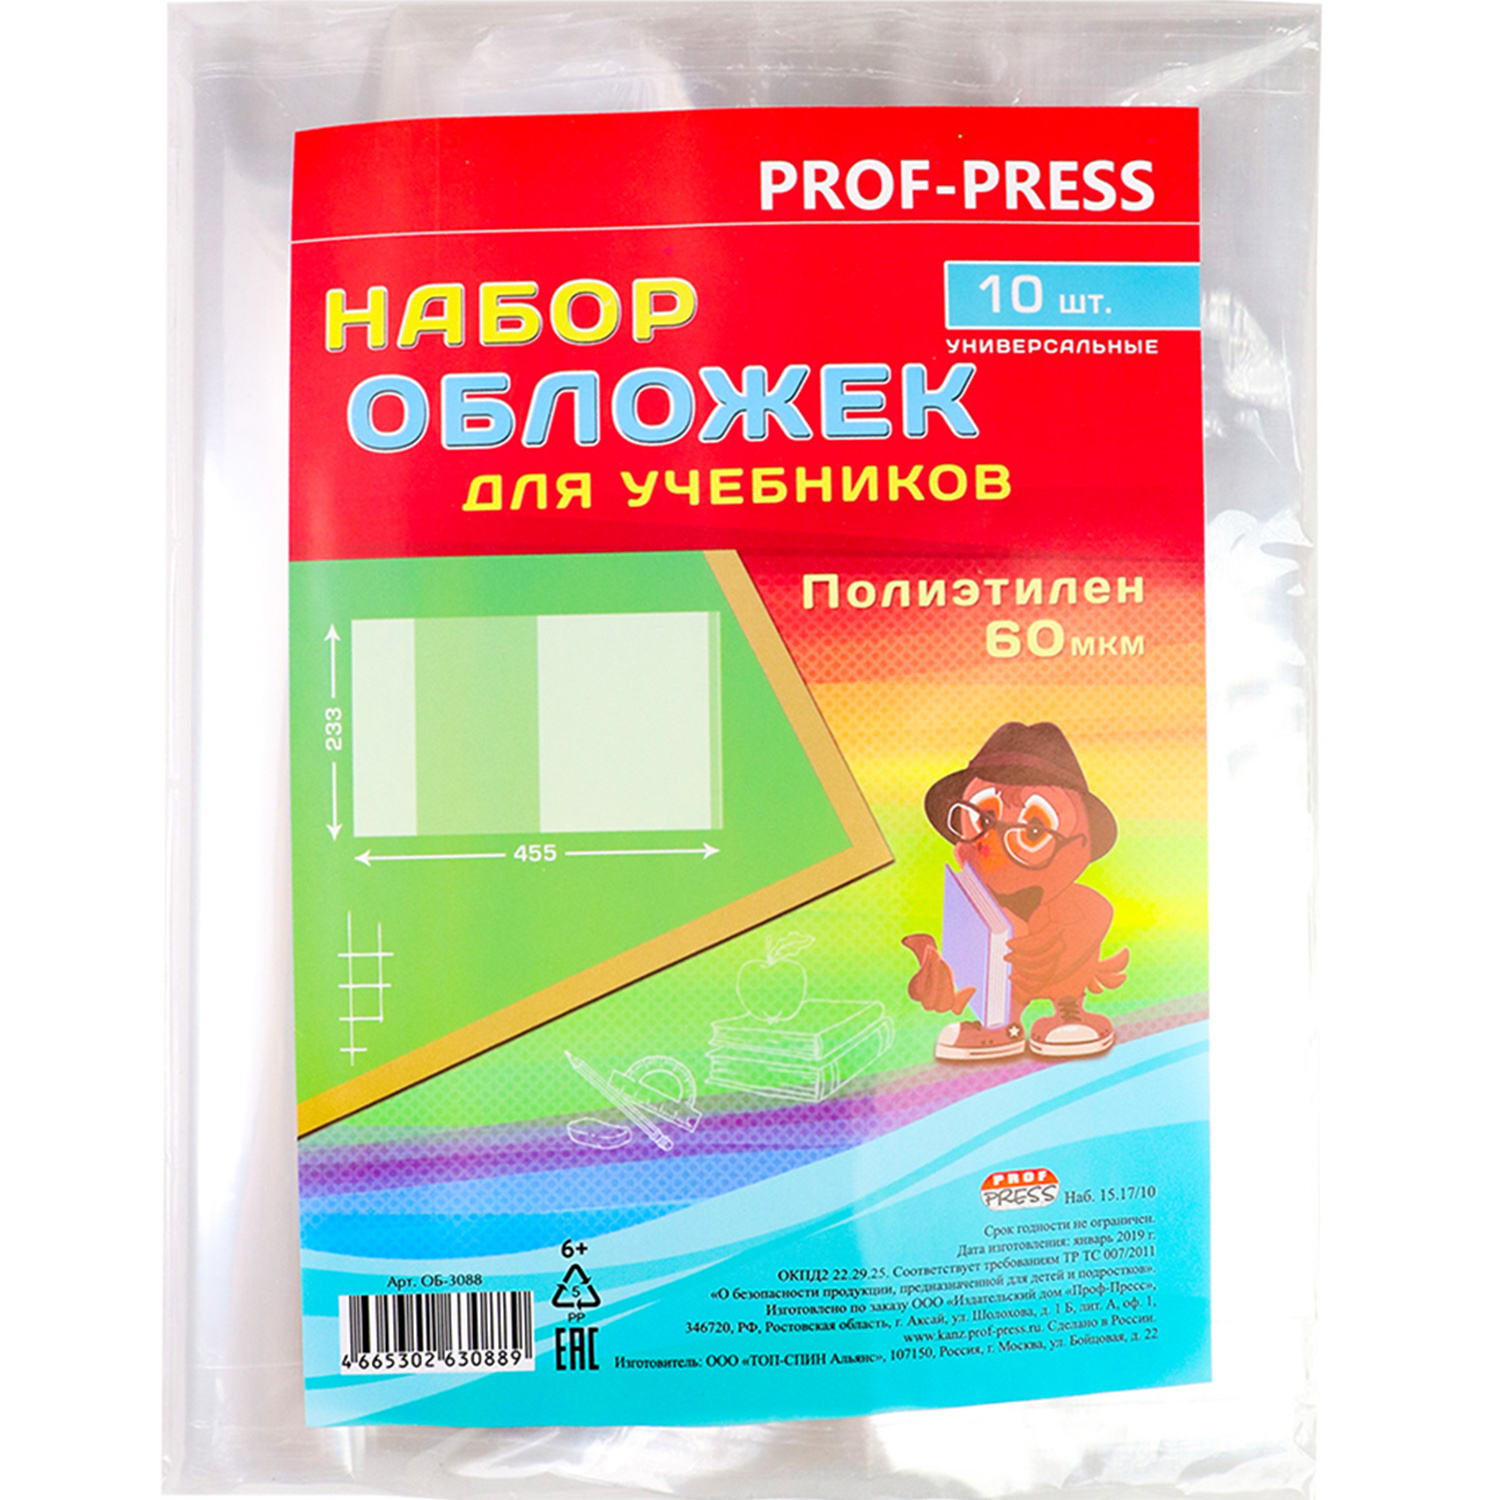 Набор обложек Prof-Press для учебников универсальные 10 шт 60 мкм 233х455 мм - фото 1